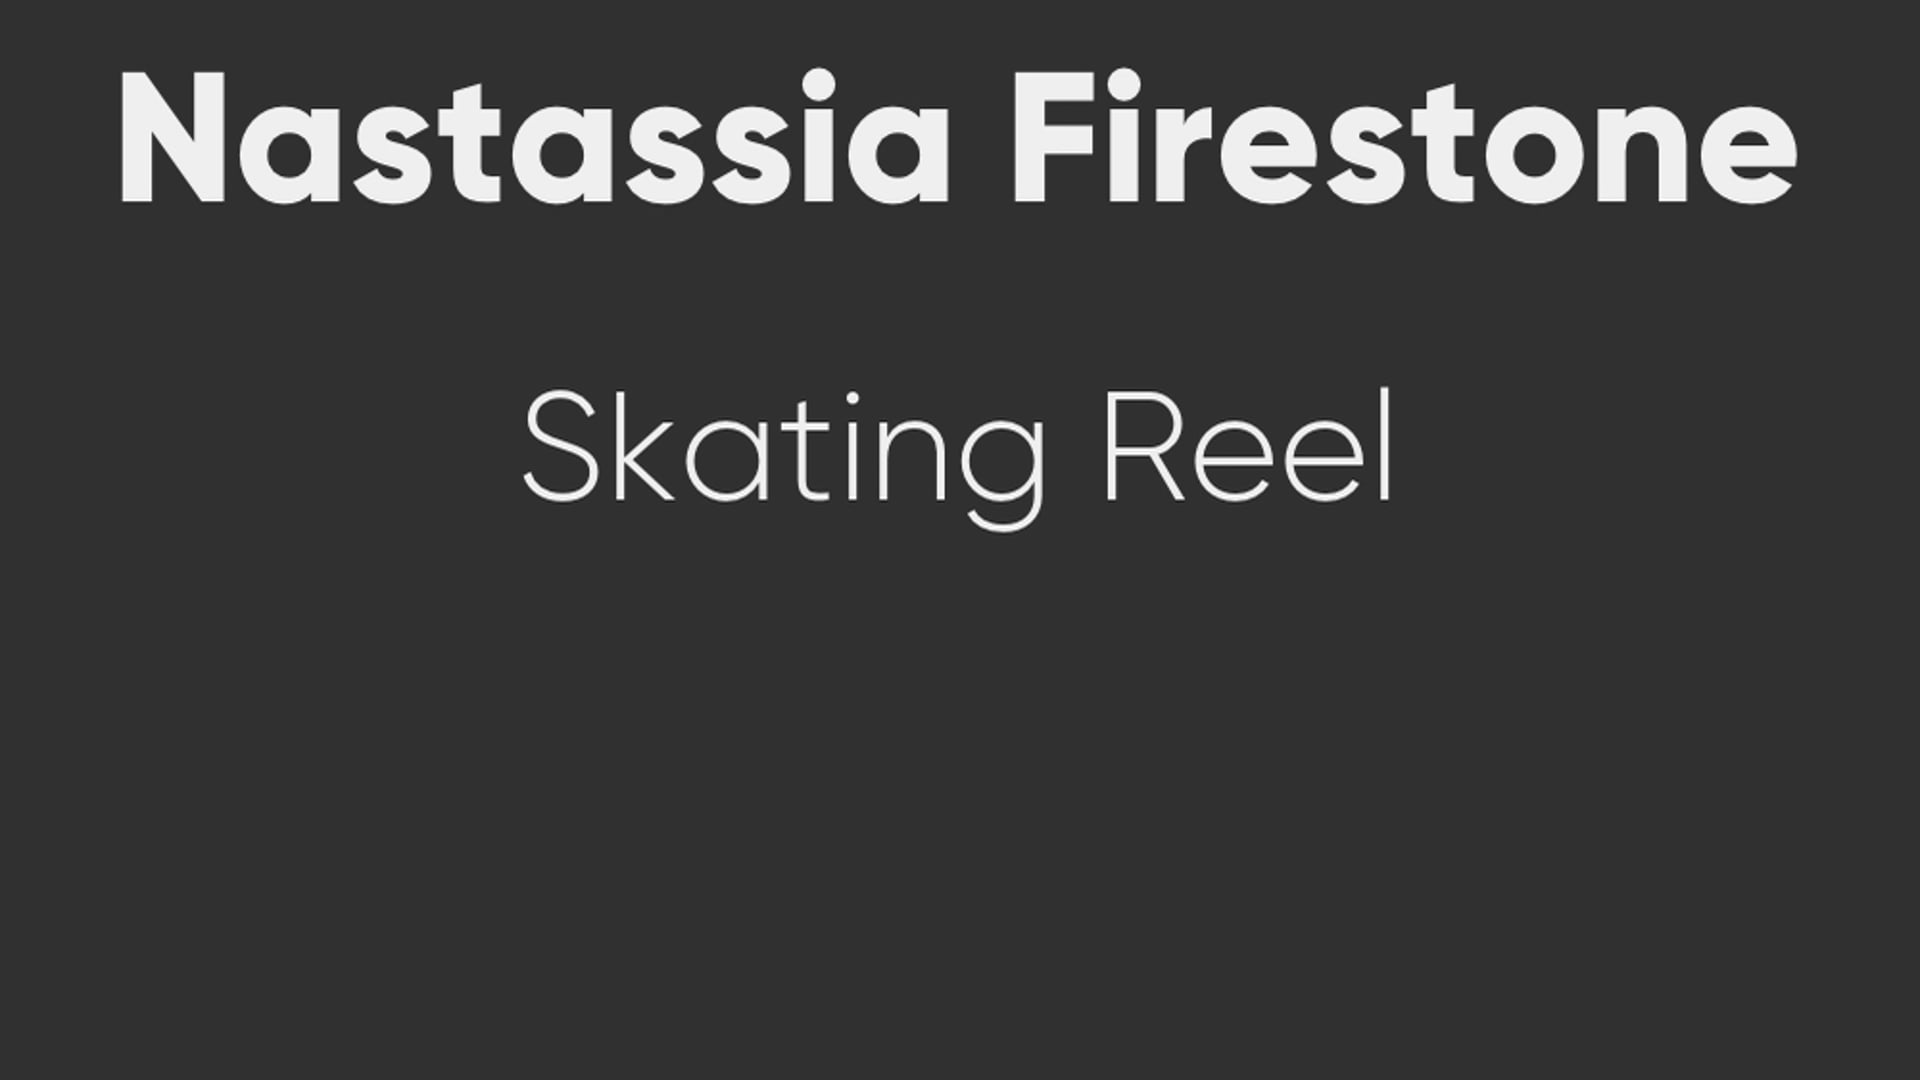 Nastassia Firestone Figure Skating Reel